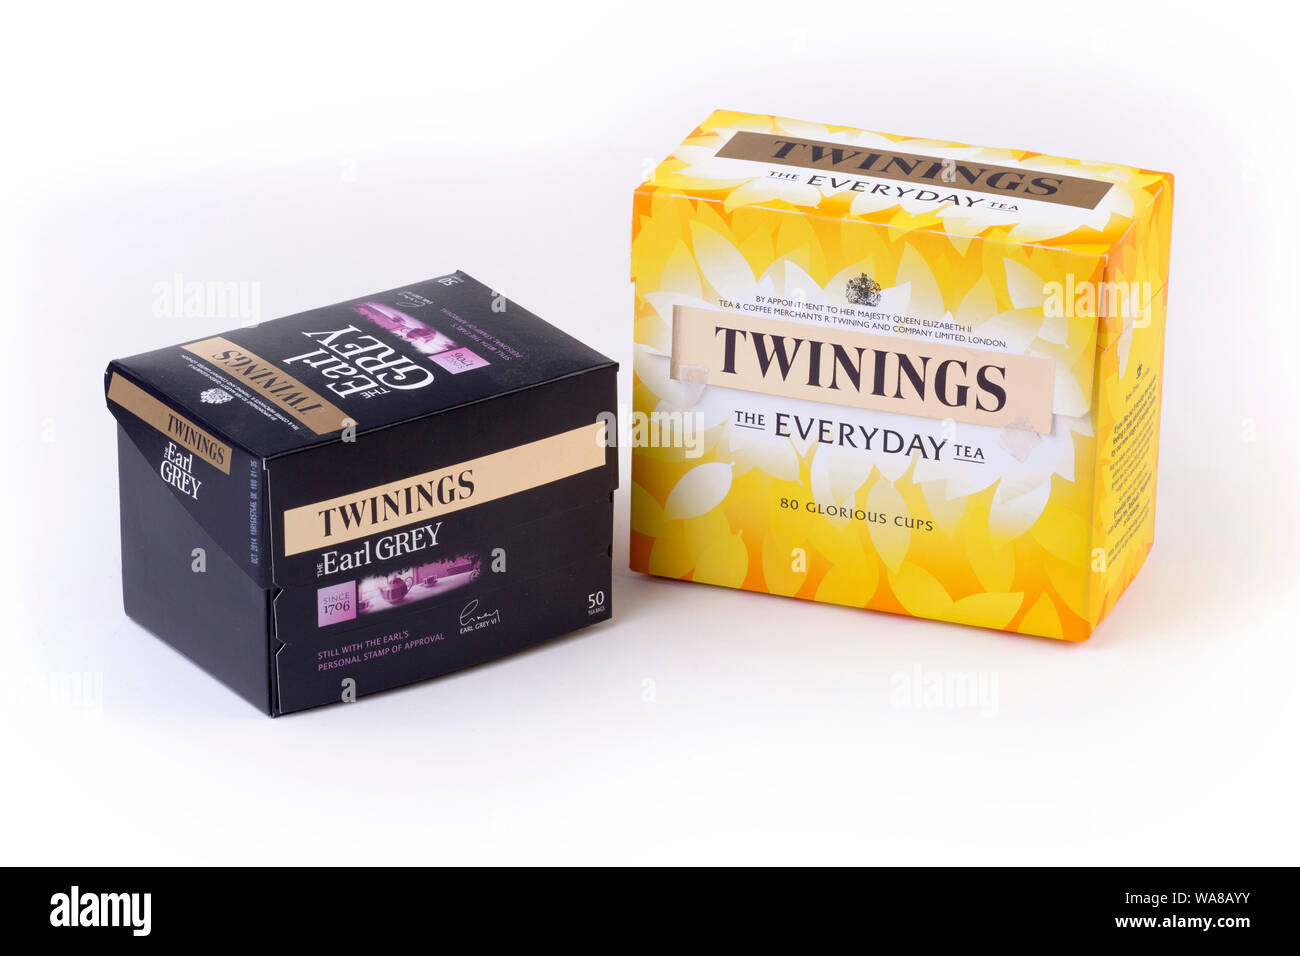 Twinings tea immagini e fotografie stock ad alta risoluzione - Alamy